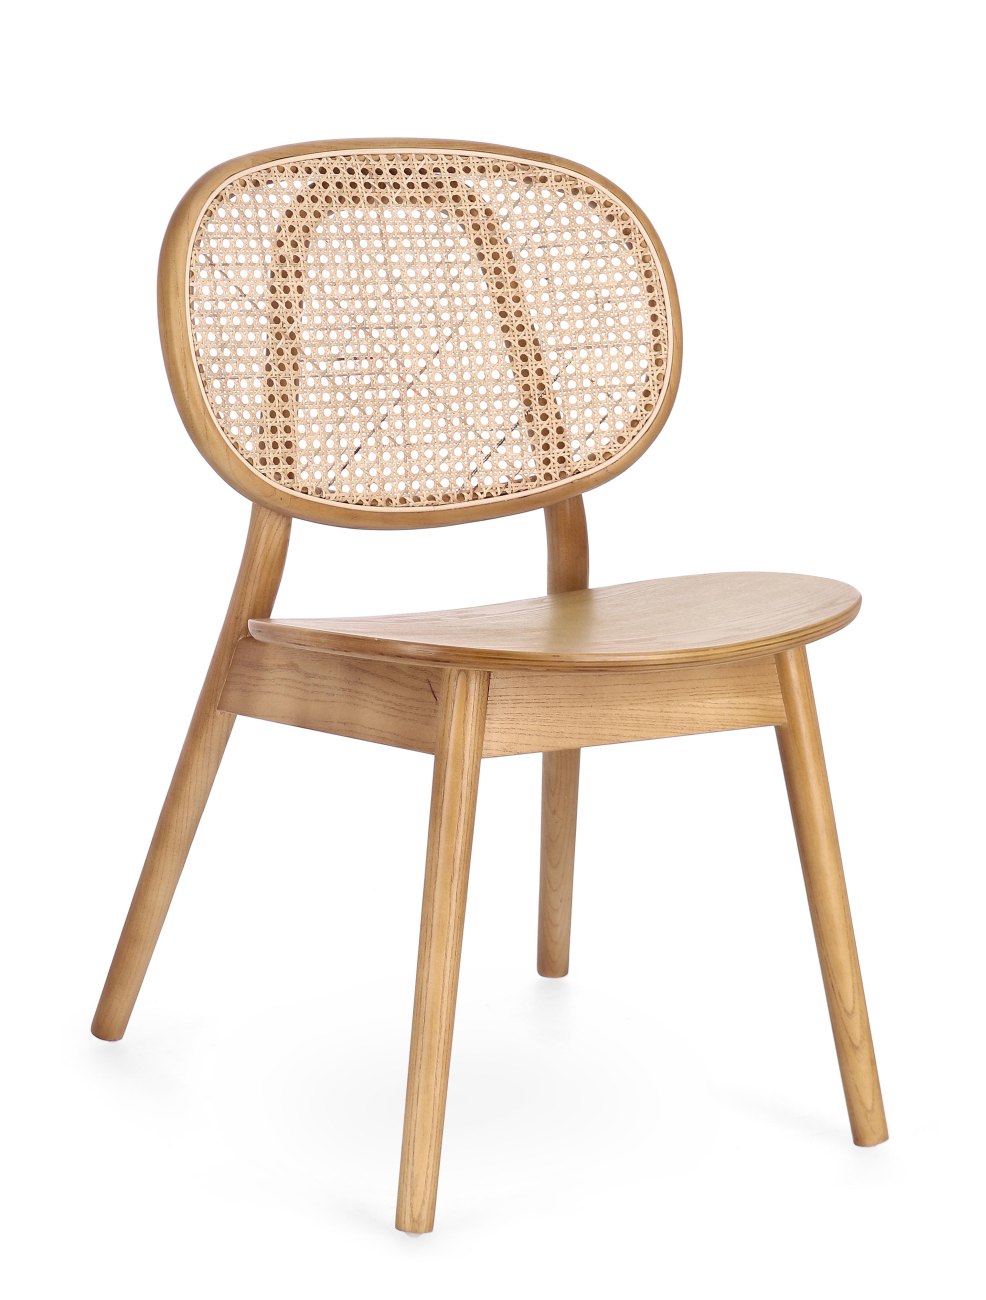 Der Esszimmerstuhl Adolis überzeugt mit seinem modernen Stil. Gefertigt wurde er aus Ulmmenholz, welcher einen natürlichen Farbton besitzt. Die Rückenlehne ist aus Rattan und hat eine natürliche Farbe. Der Stuhl besitzt eine Sitzhöhe von 46 cm.